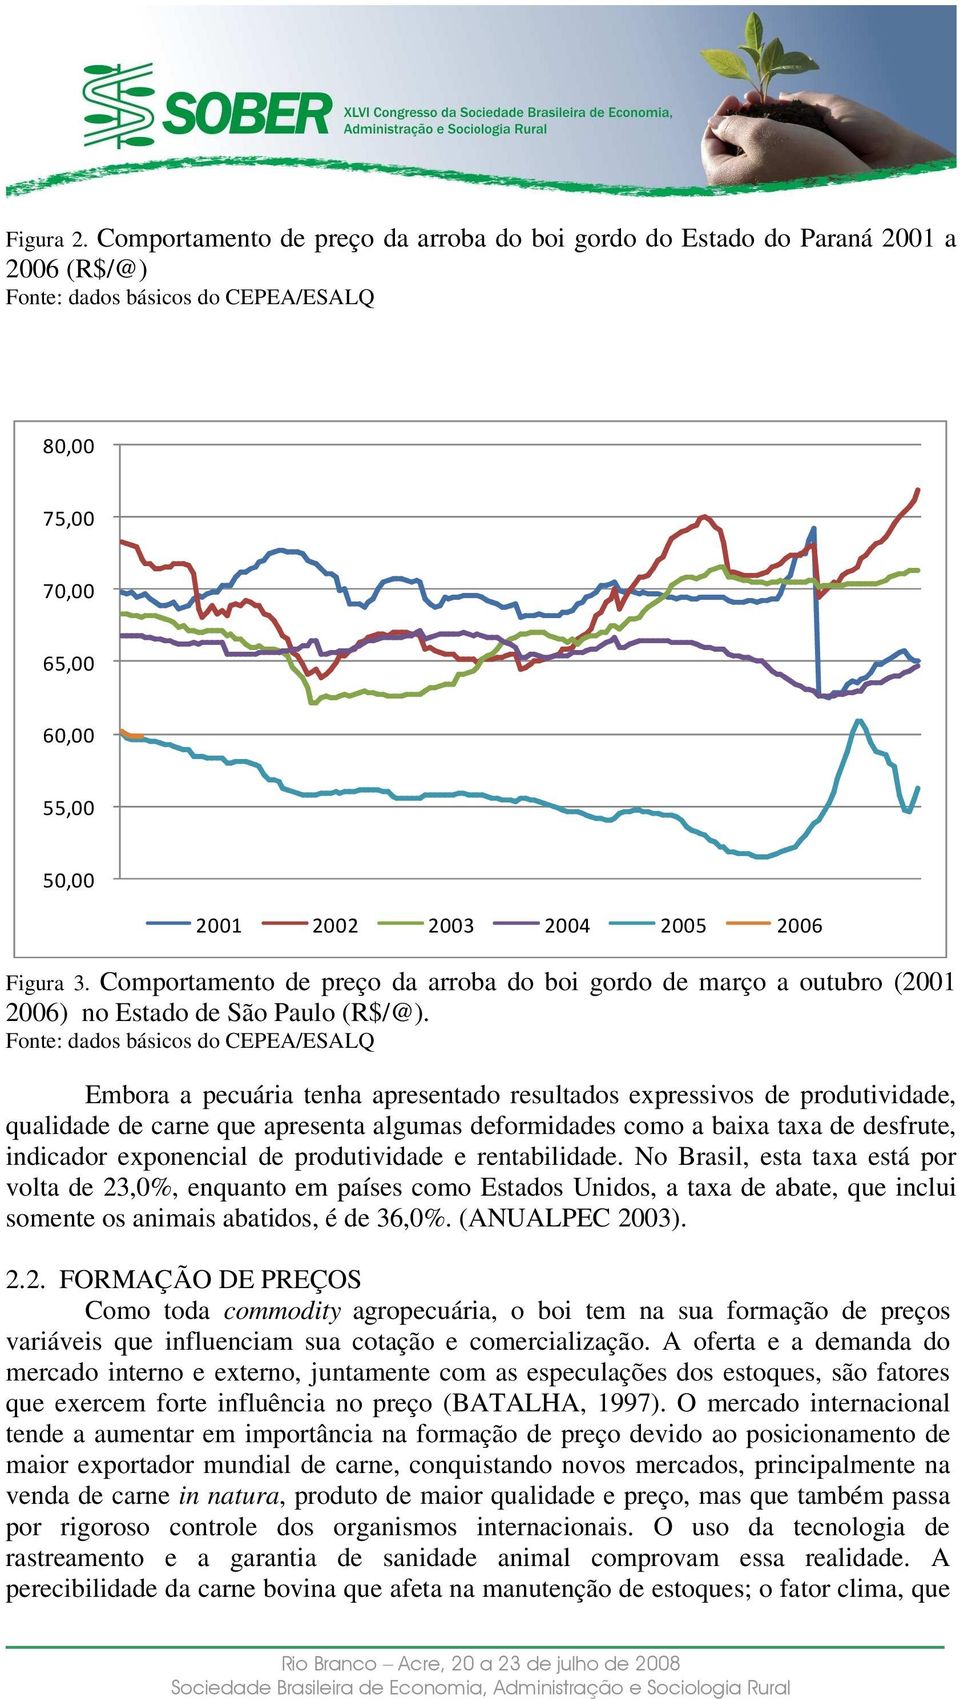 3. Comportamento de preço da arroba do boi gordo de março a outubro (2001 2006) no Estado de São Paulo (R$/@).